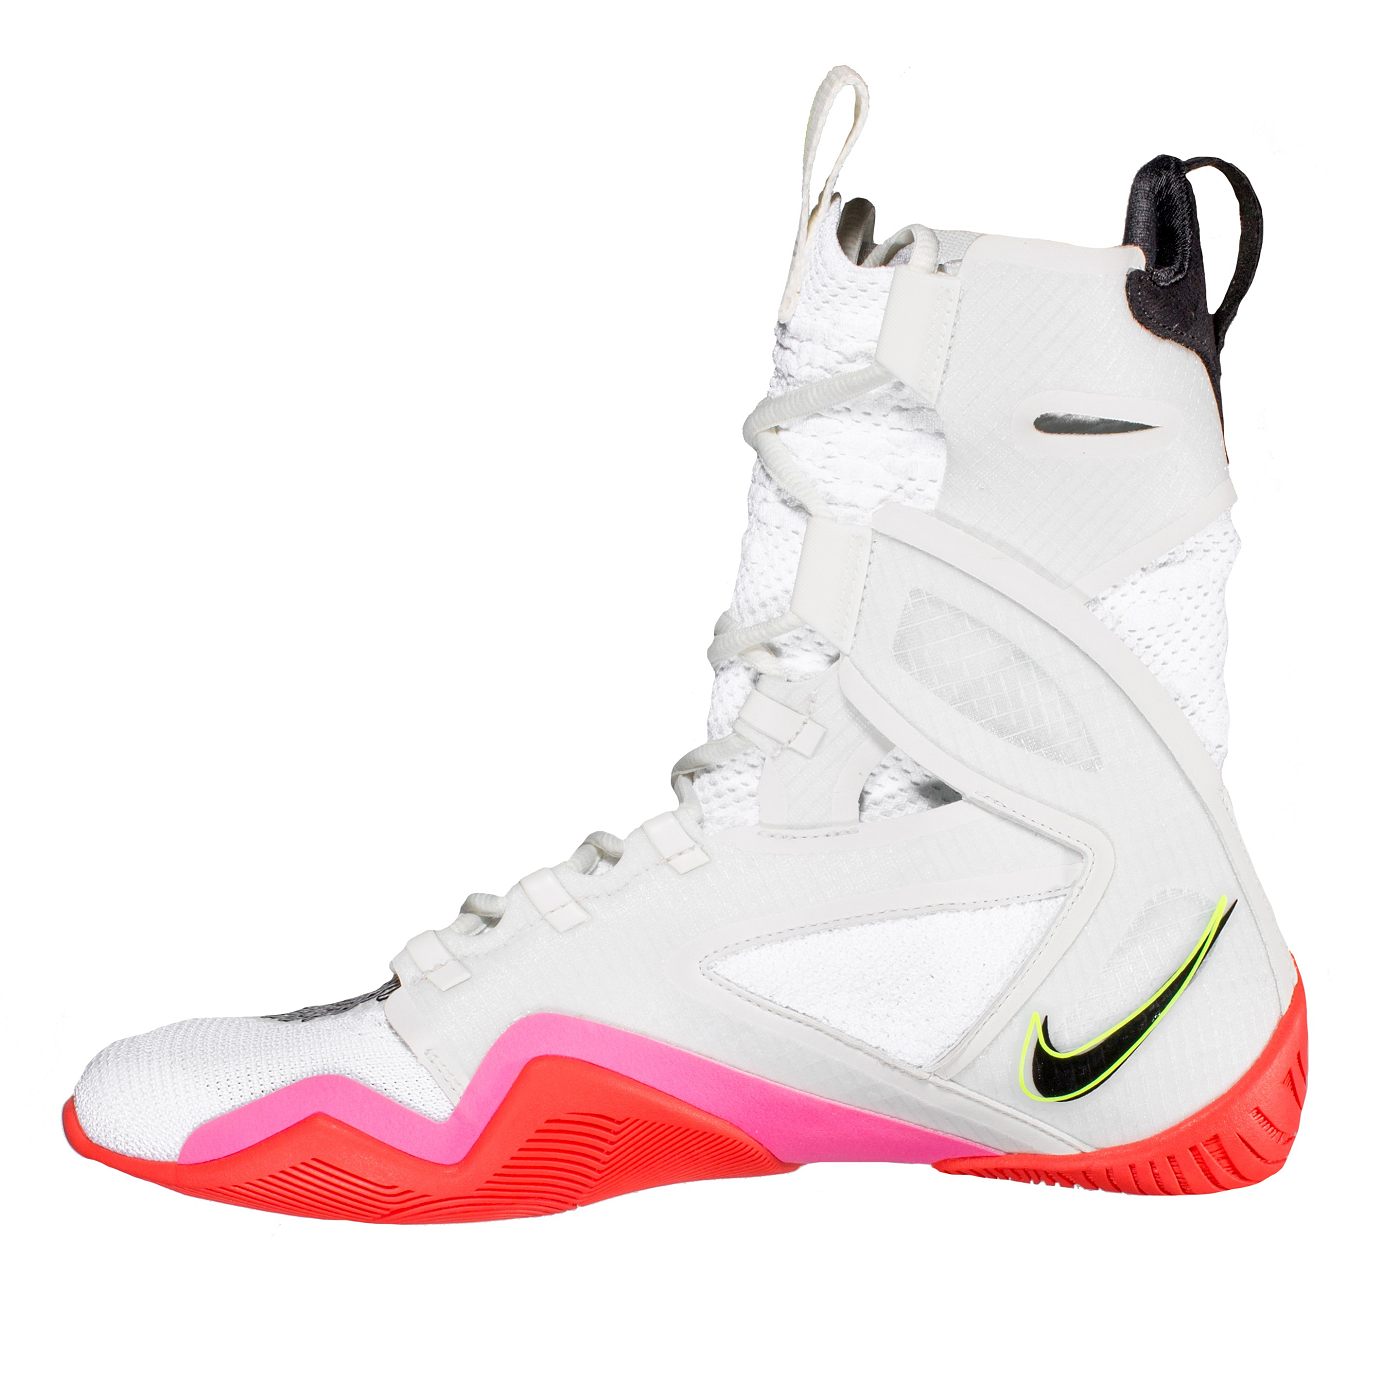 Найк хайперко. Nike HYPERKO 2. Боксёрки Nike HYPERKO 2.0 White/Pink. Nike HYPERKO 2.0 Limited Edition. Боксерки Nike HYPERKO 2.0.